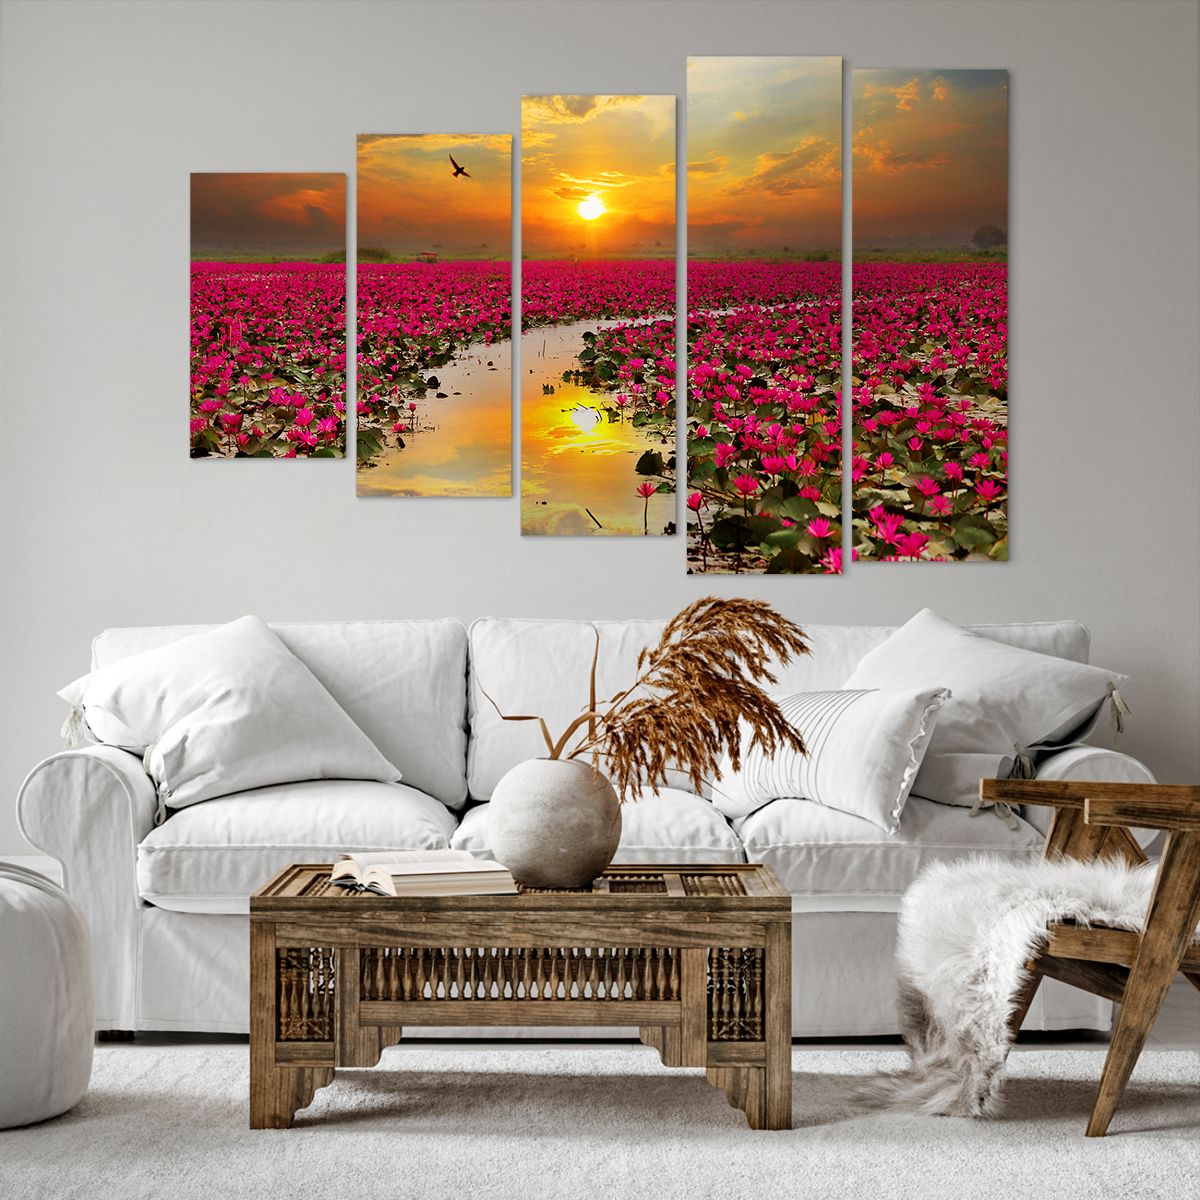 Bild auf Leinwand Lotus Blume, Bild auf Leinwand Blumen, Bild auf Leinwand Landschaft, Bild auf Leinwand Natur, Bild auf Leinwand Der Sonnenuntergang